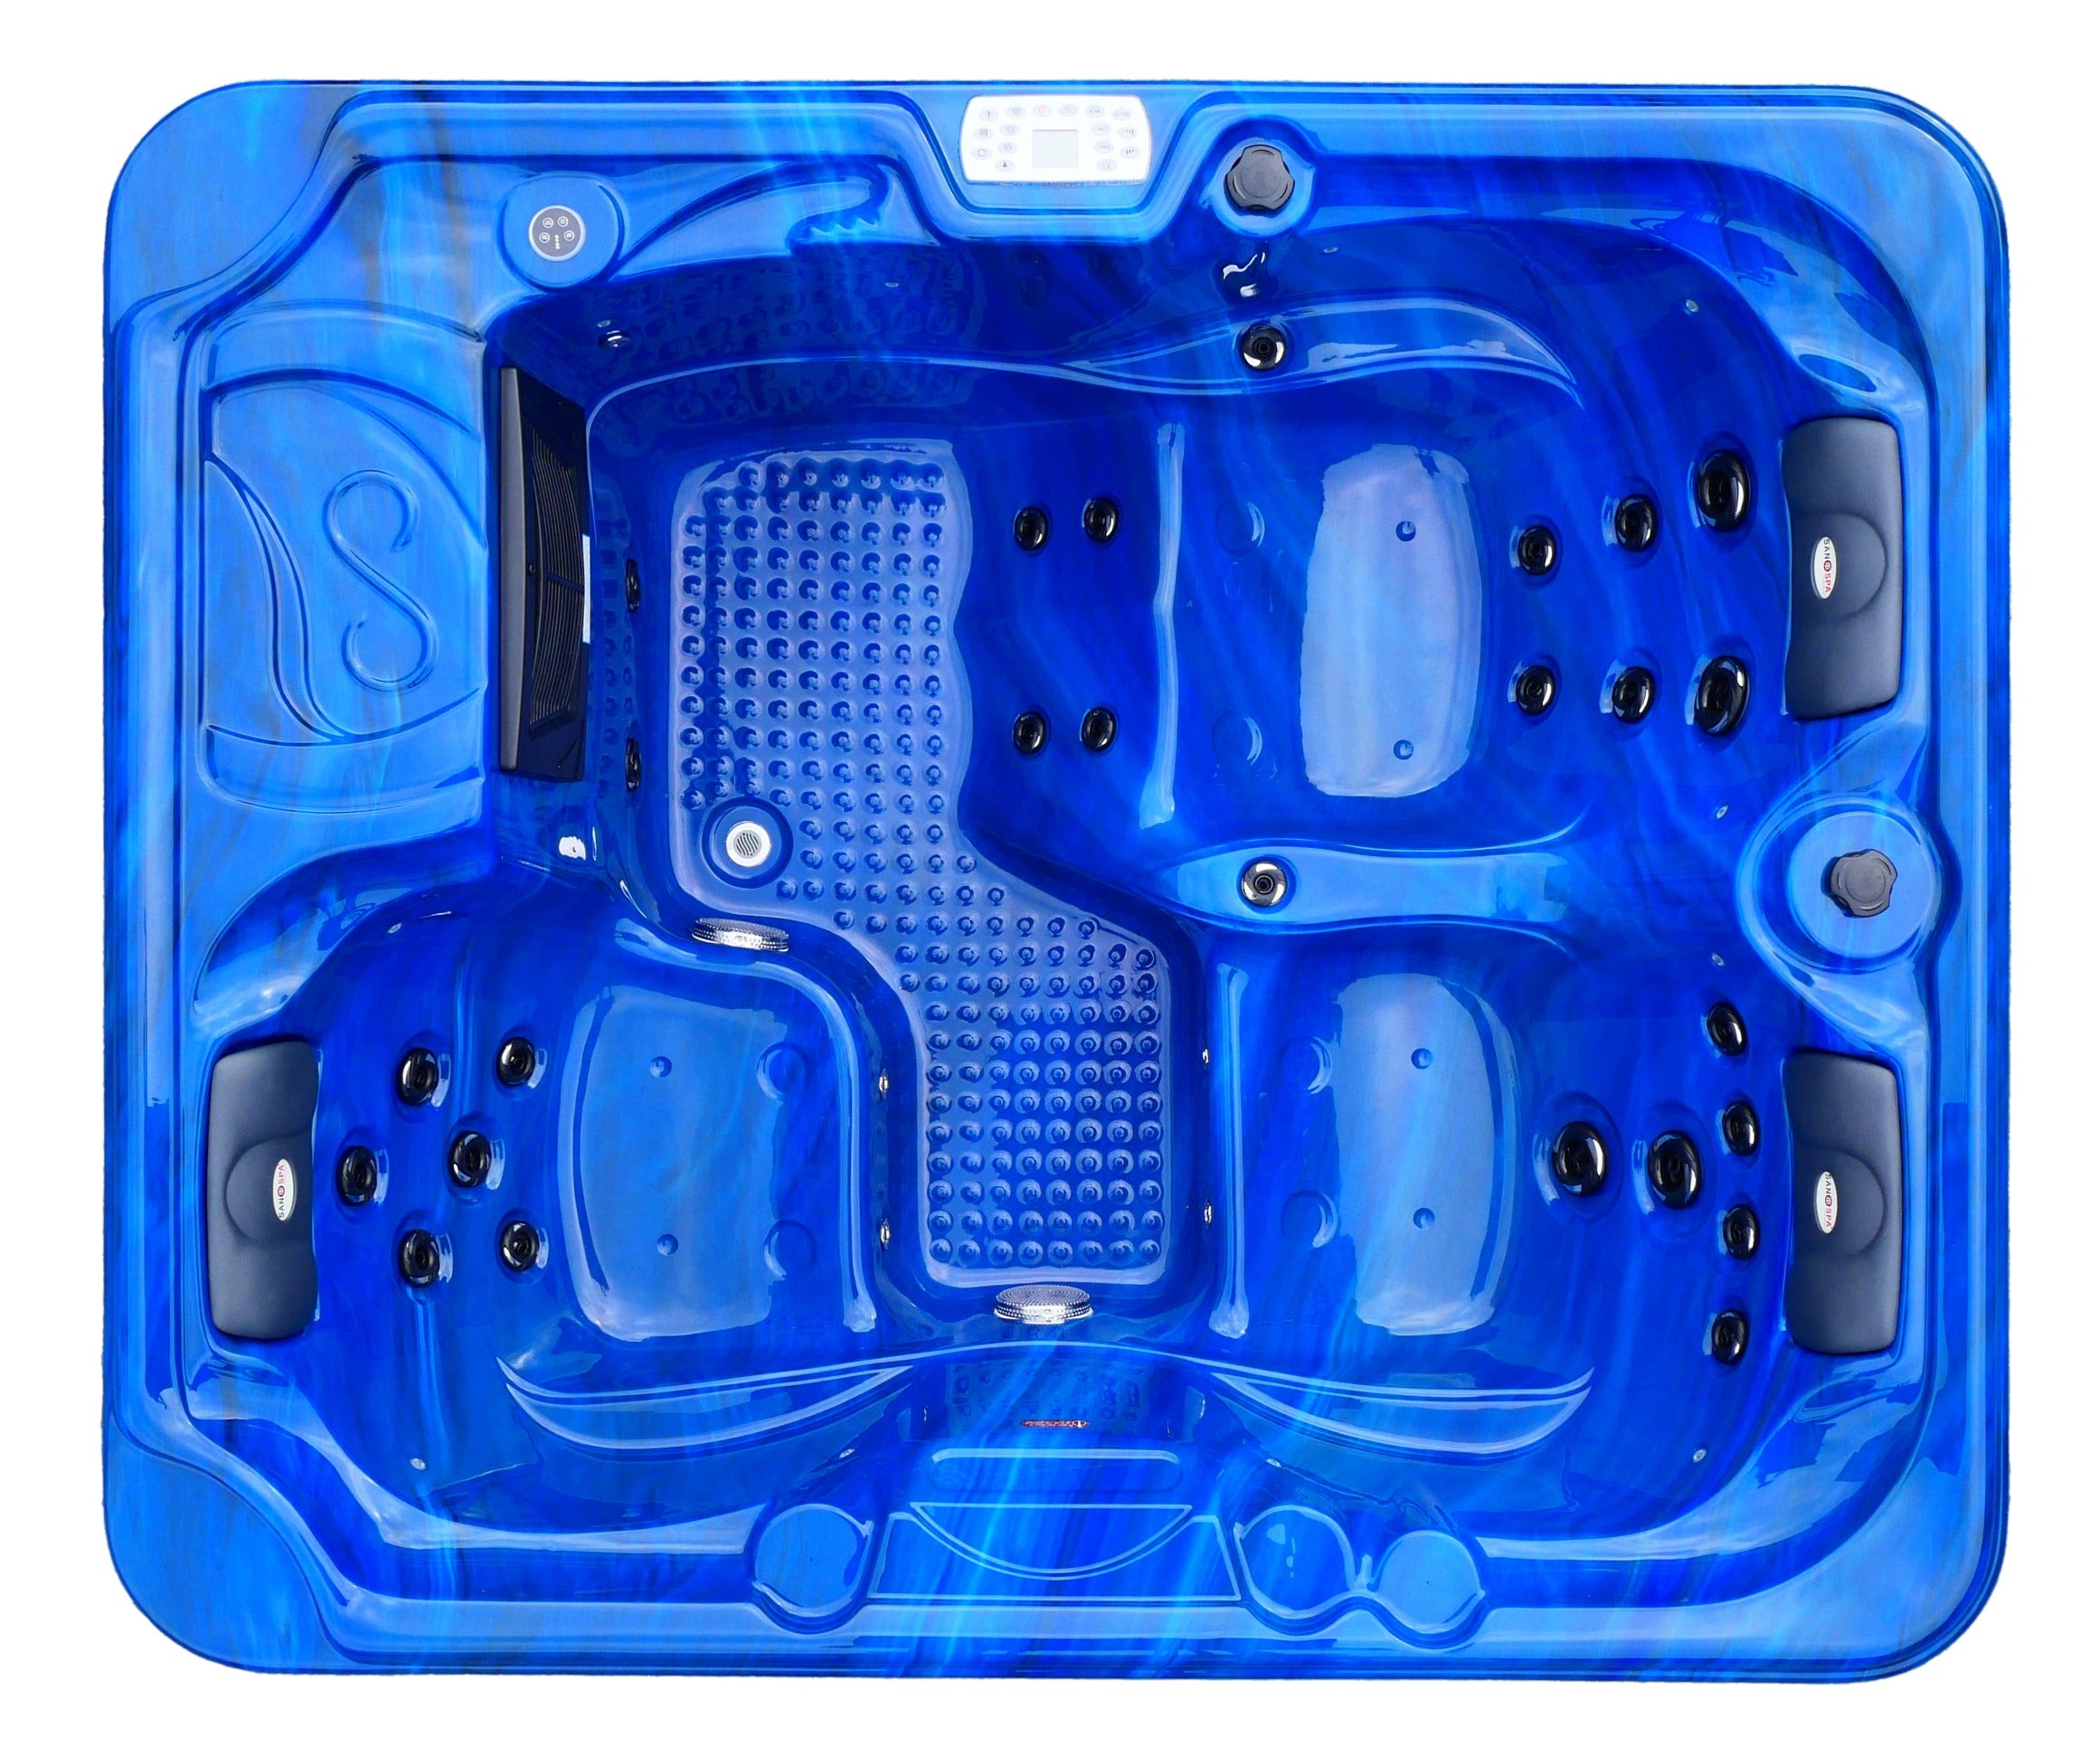 Sanotechnik Outdoor Whirlpool OASIS - Blau - Ansicht von oben - mit 30 Massagedüsen für 3 Personen, Radio, Lautsprecher, Bluetooth, LED Beleuchtung